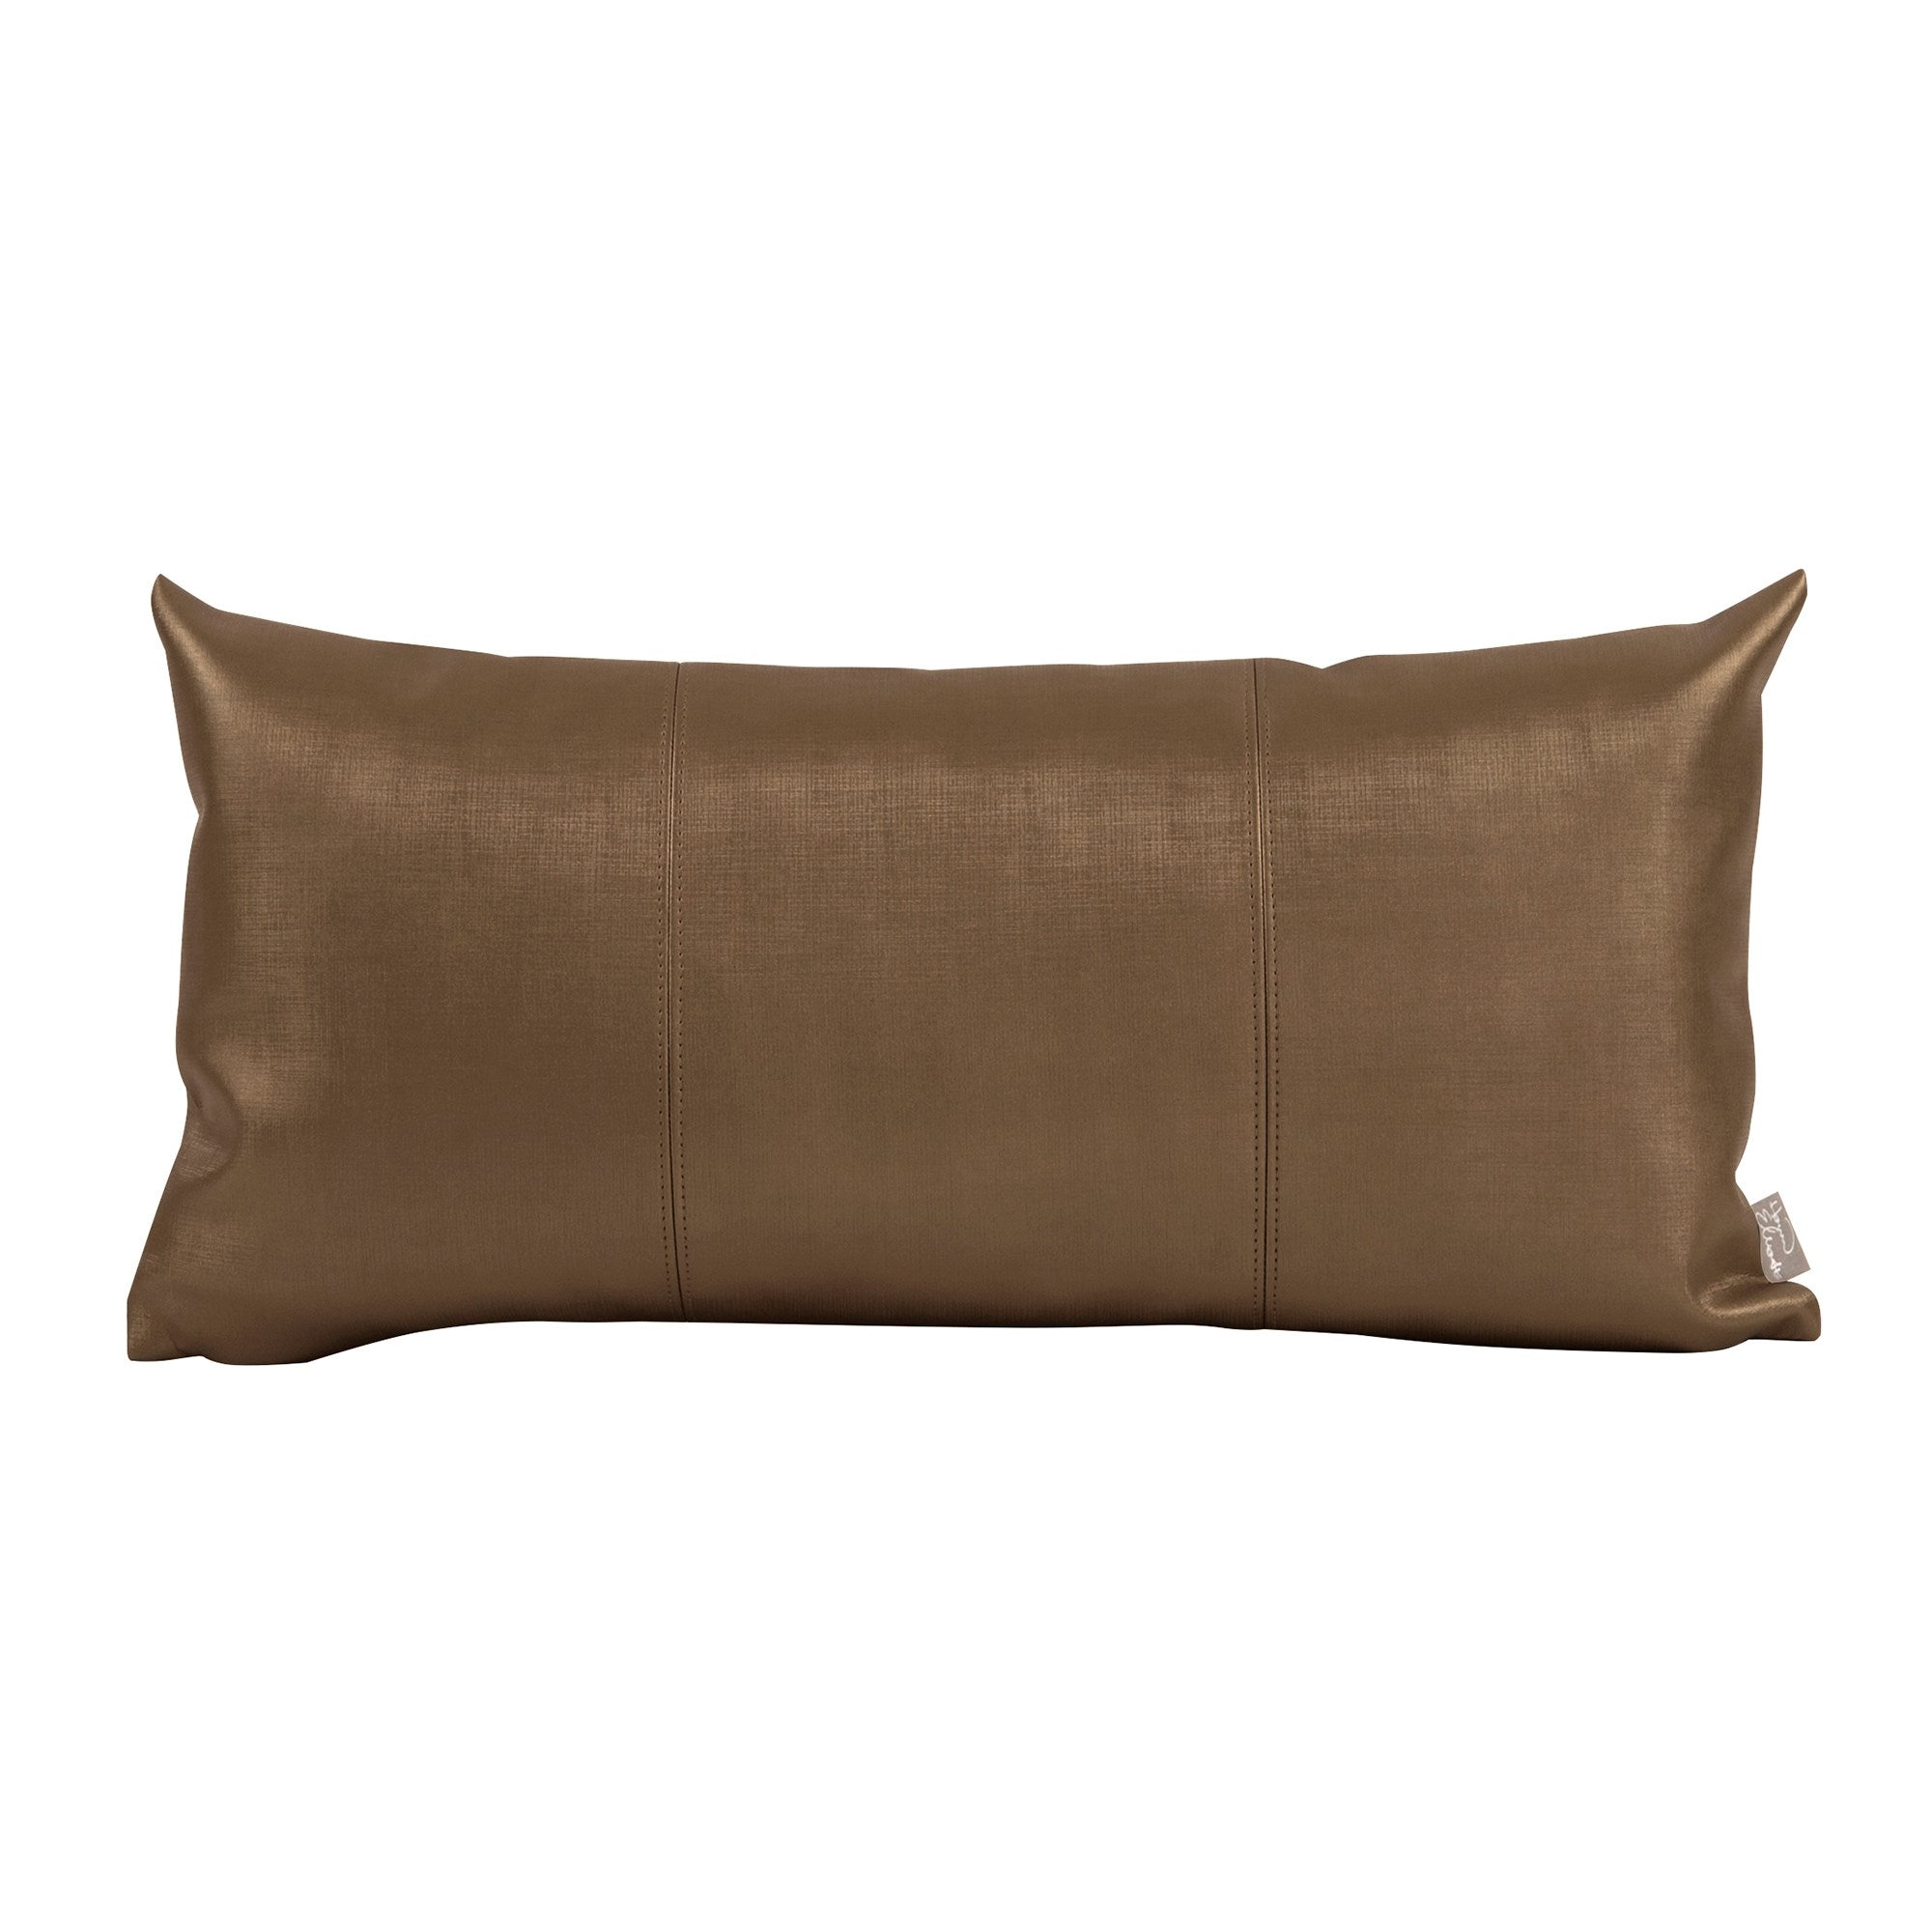 Luxe Bronze Kidney Pillow- 11" x 22"